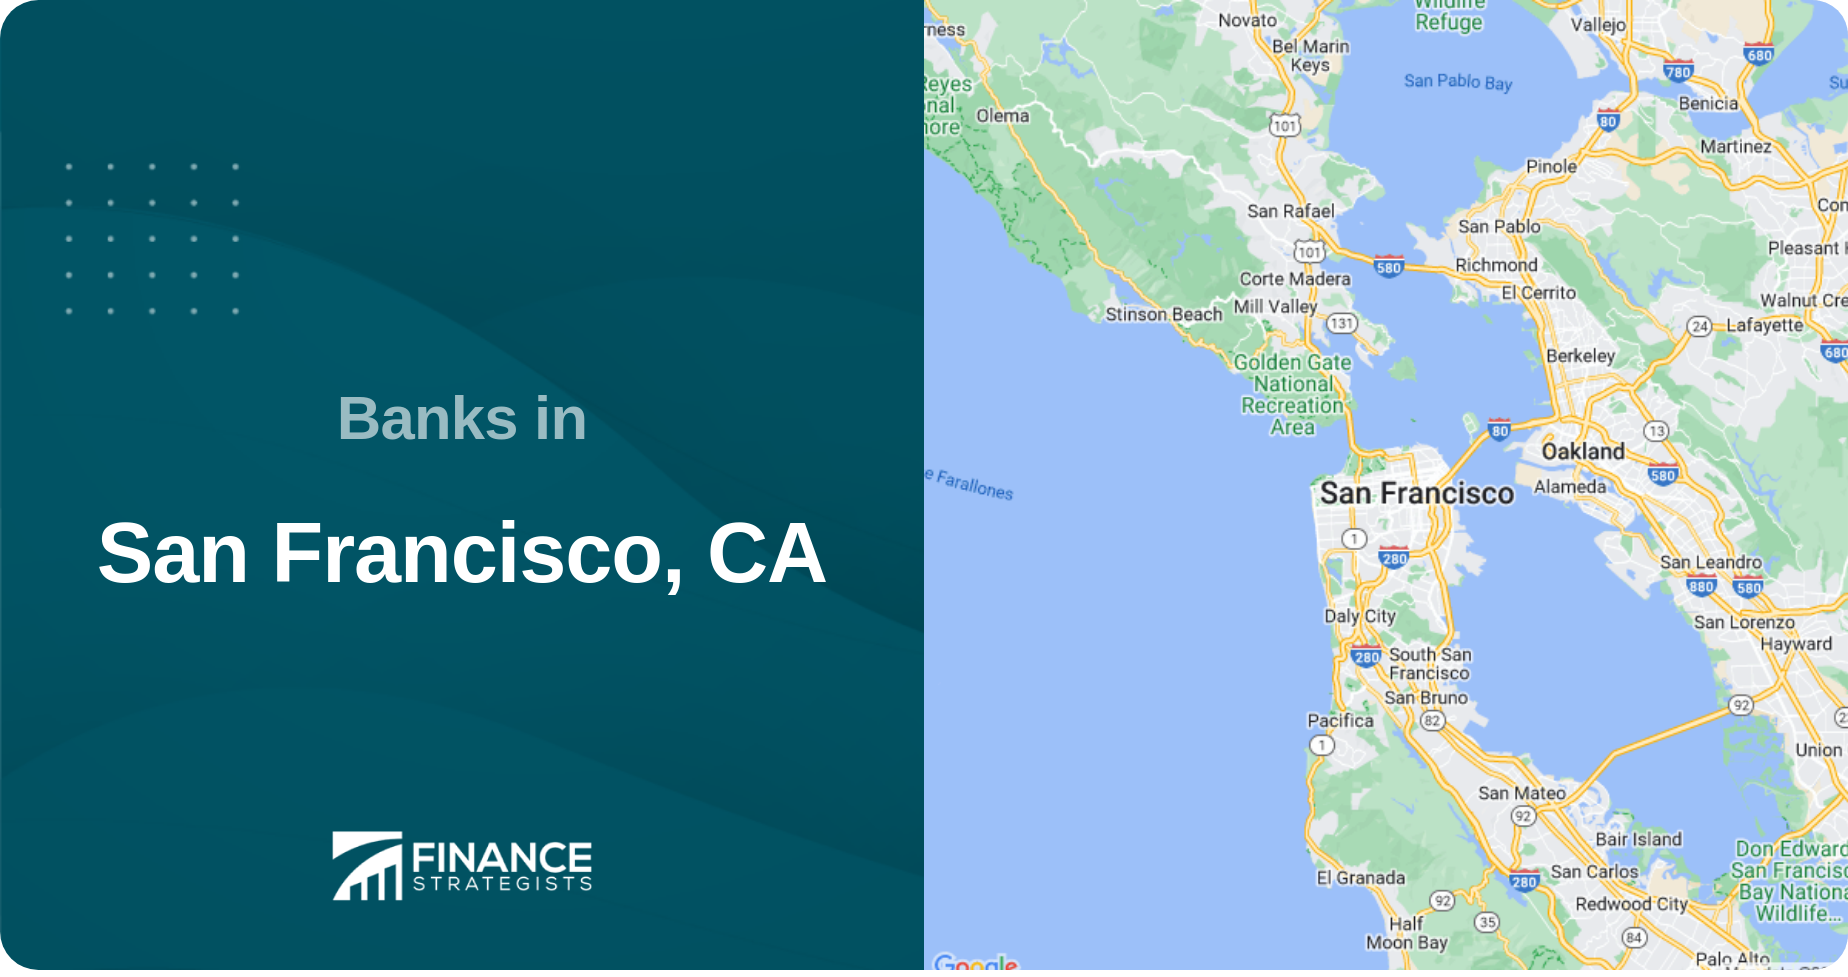 Banks in San Francisco, CA